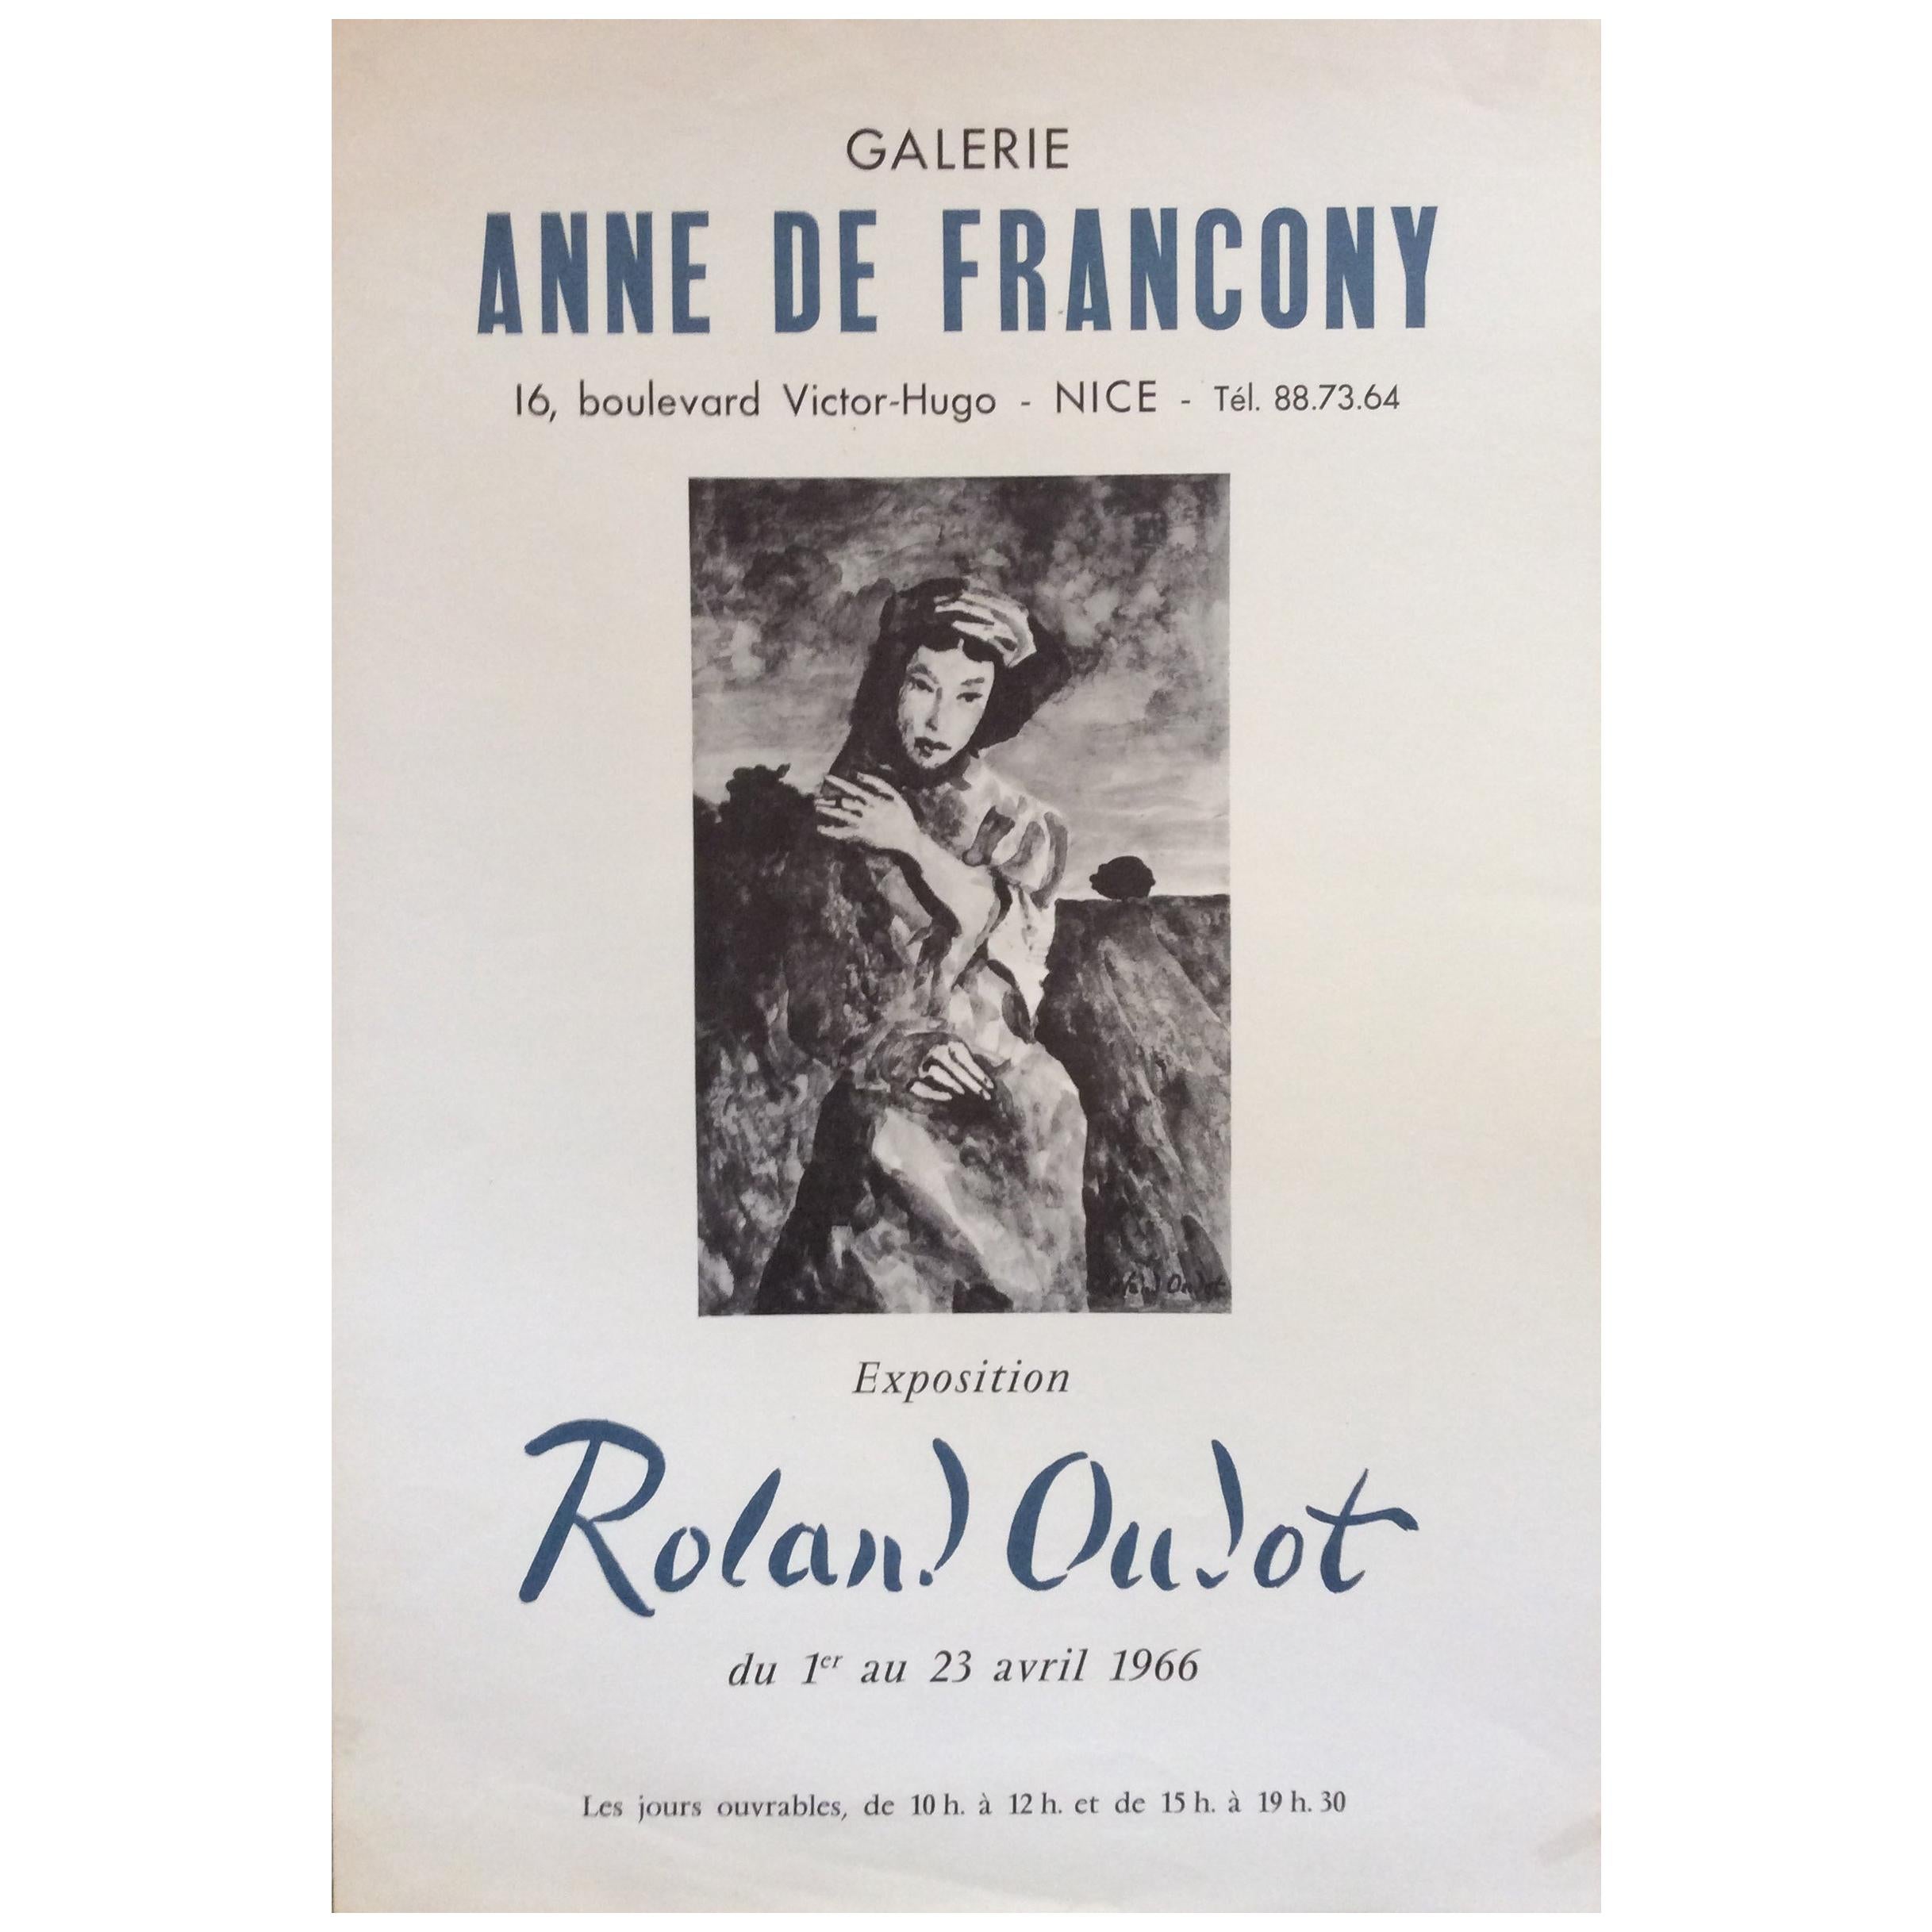 Midcentury Original "Anne De Francony Galerie" Portrait Poster by Roland Oublot